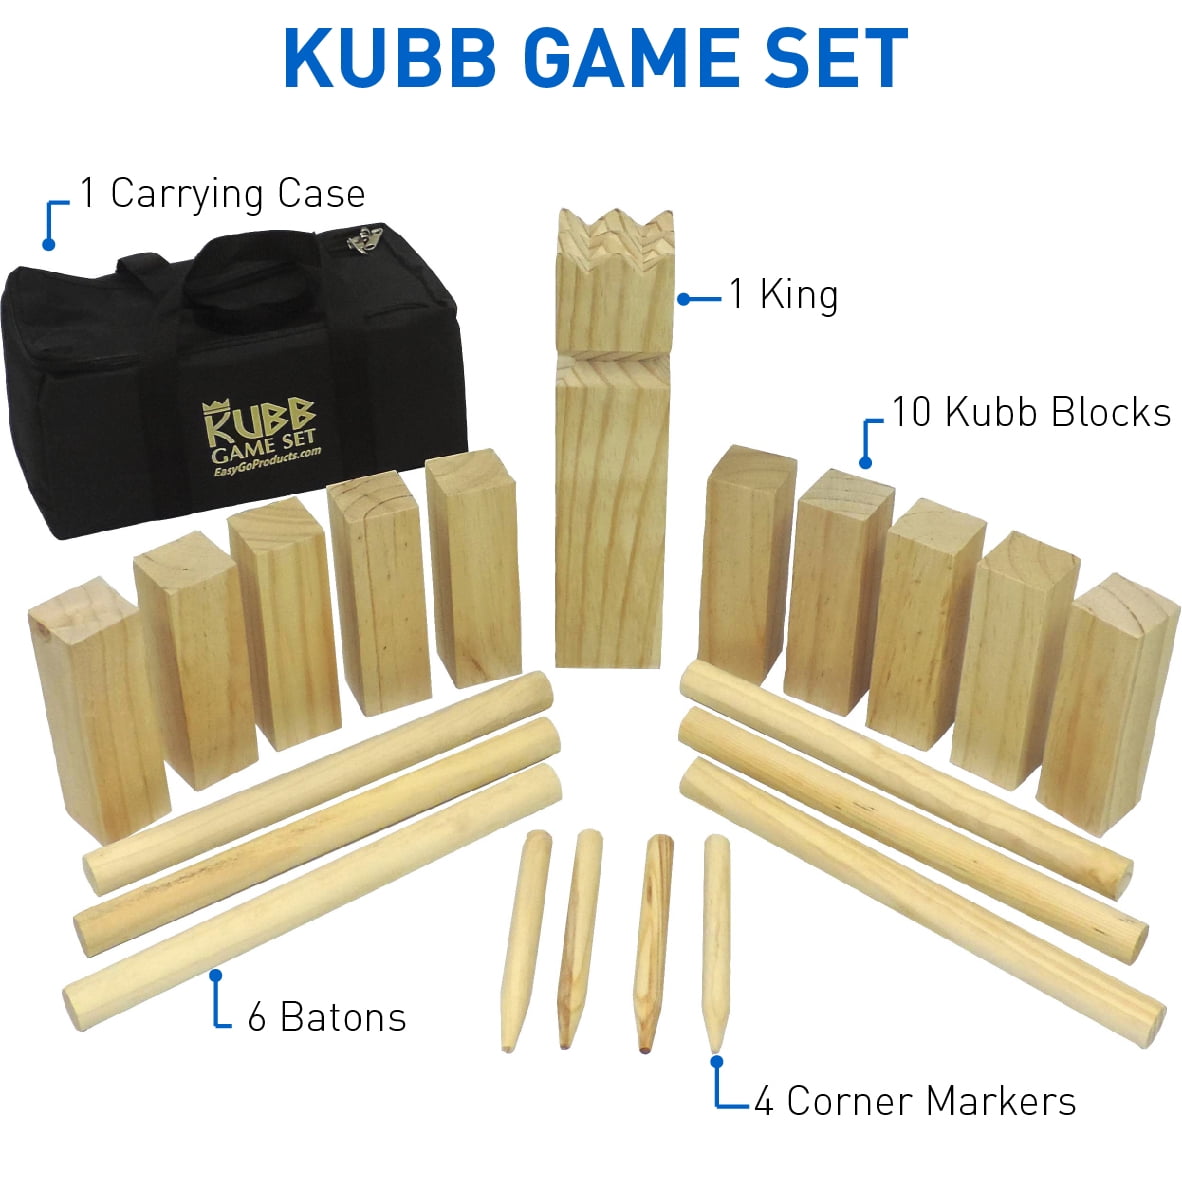 6 Tossing Dowels Triumph Premium Kubb Set 1 King Kub Includes 10 Kubb Blocks 